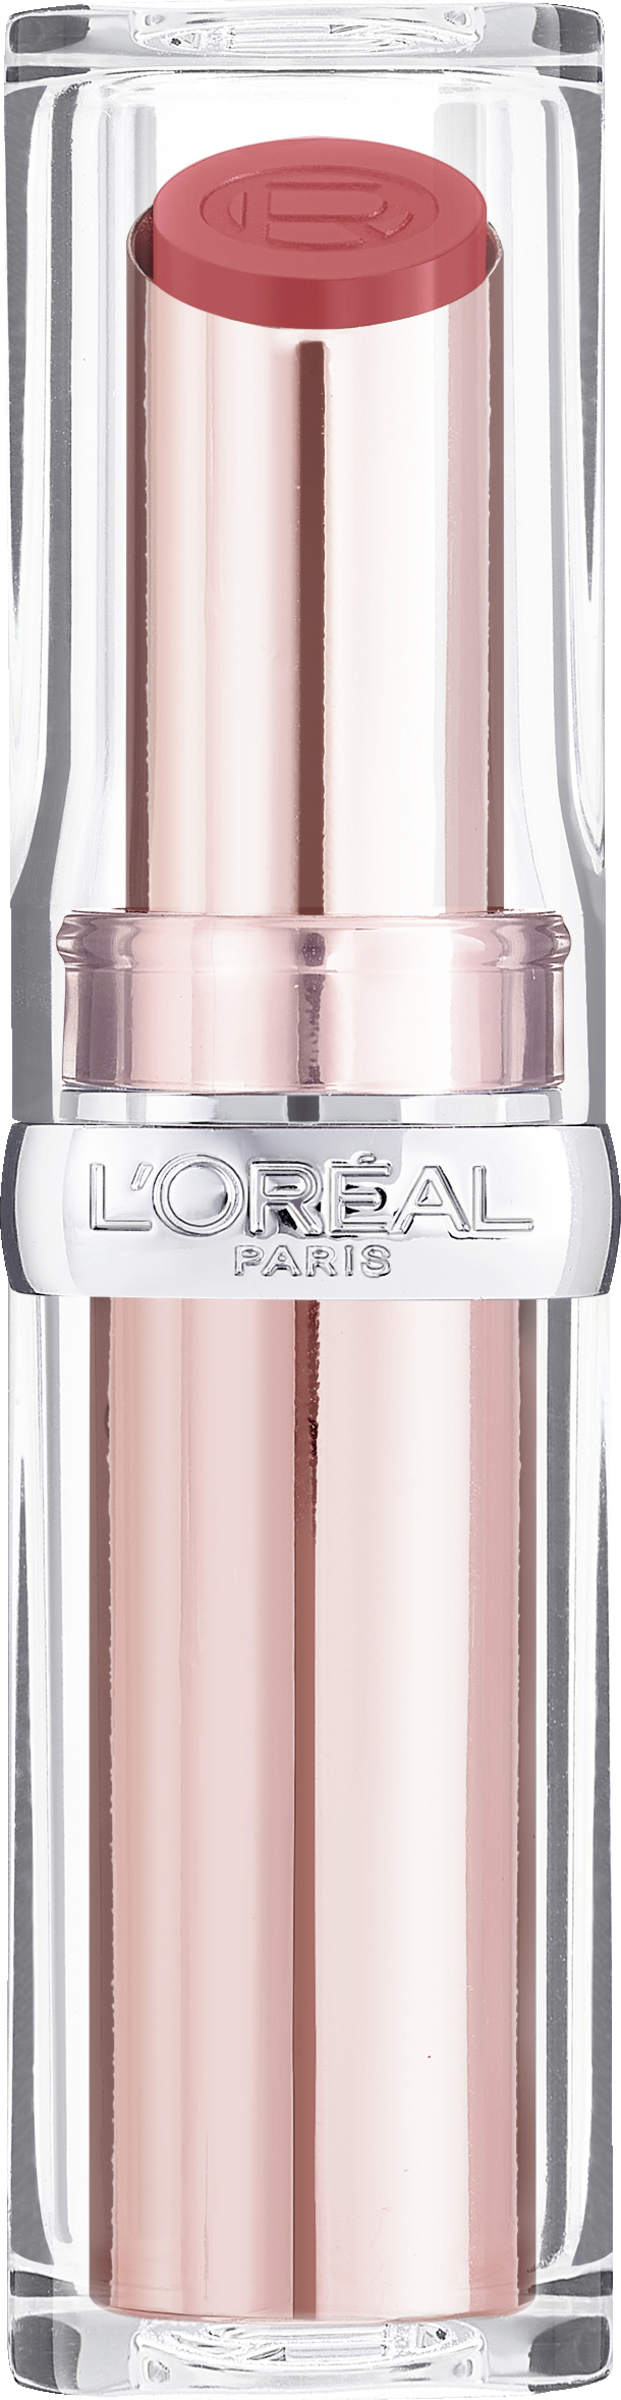 L’Oréal Paris Color Riche Plump & Shine 102 Watermelon Plump